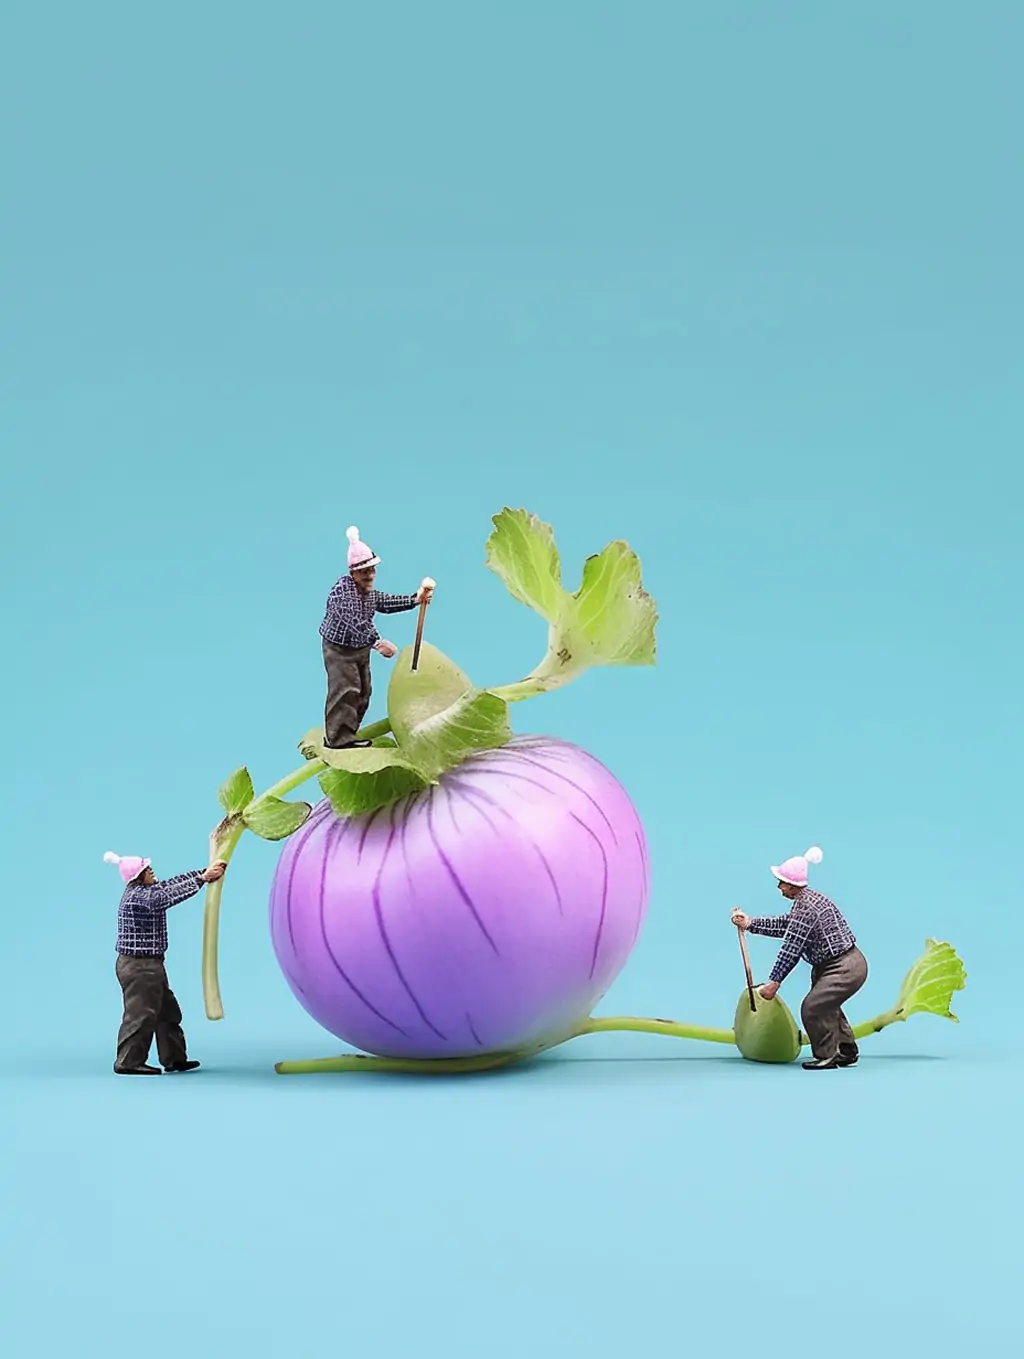 创意蔬菜洋葱农民伯伯微型景观摄影海报midjourney关键词咒语 - Ai宇宙吧--Ai宇宙吧-